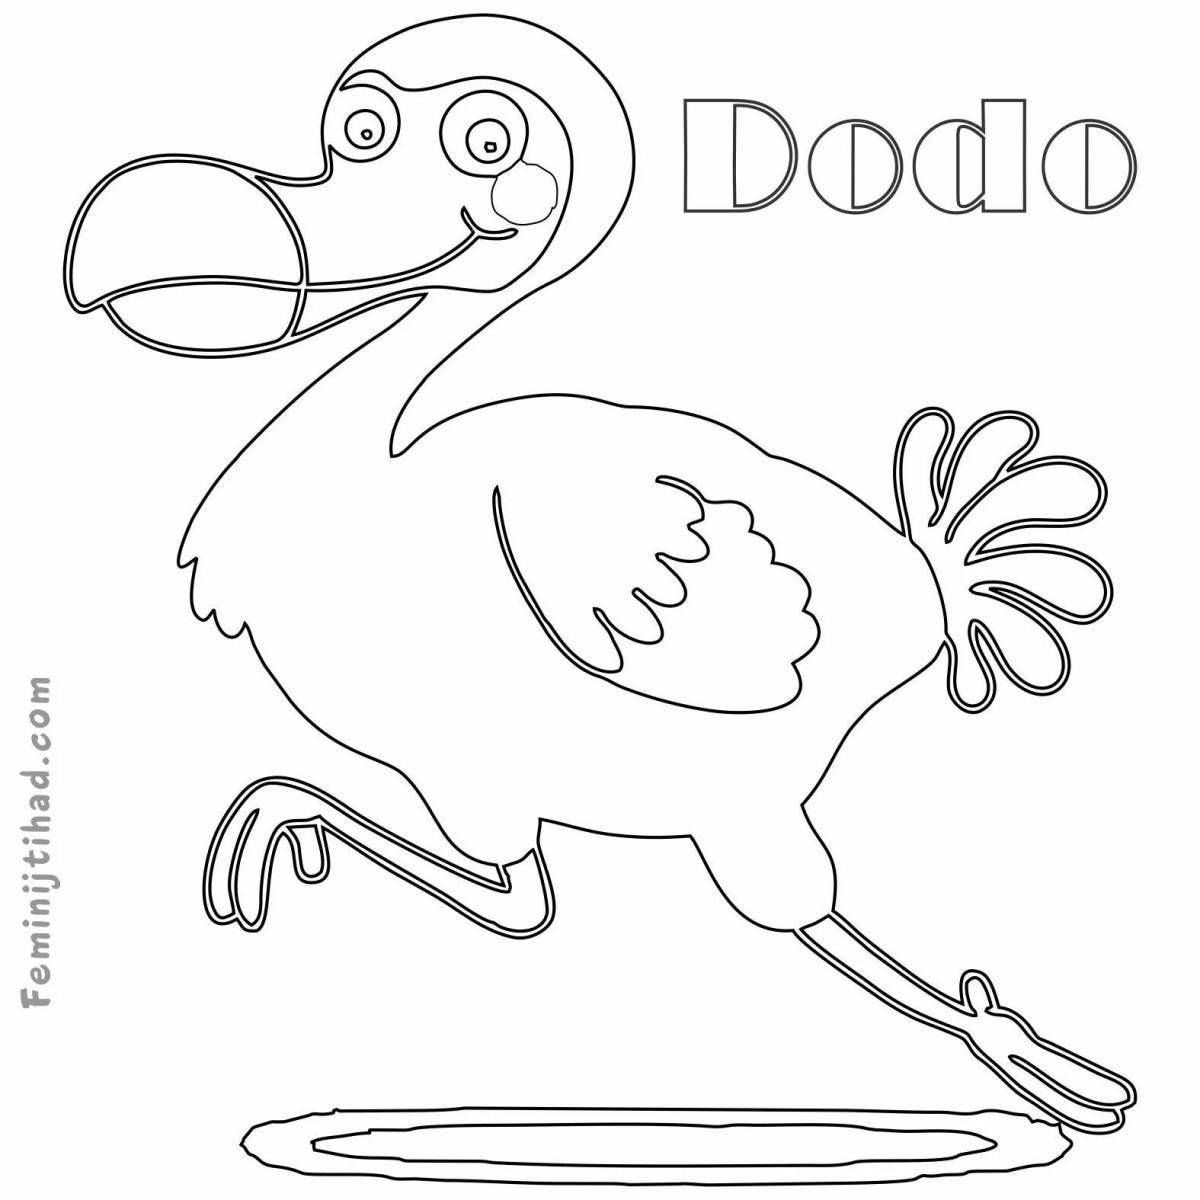 Colouring bright dodo bird